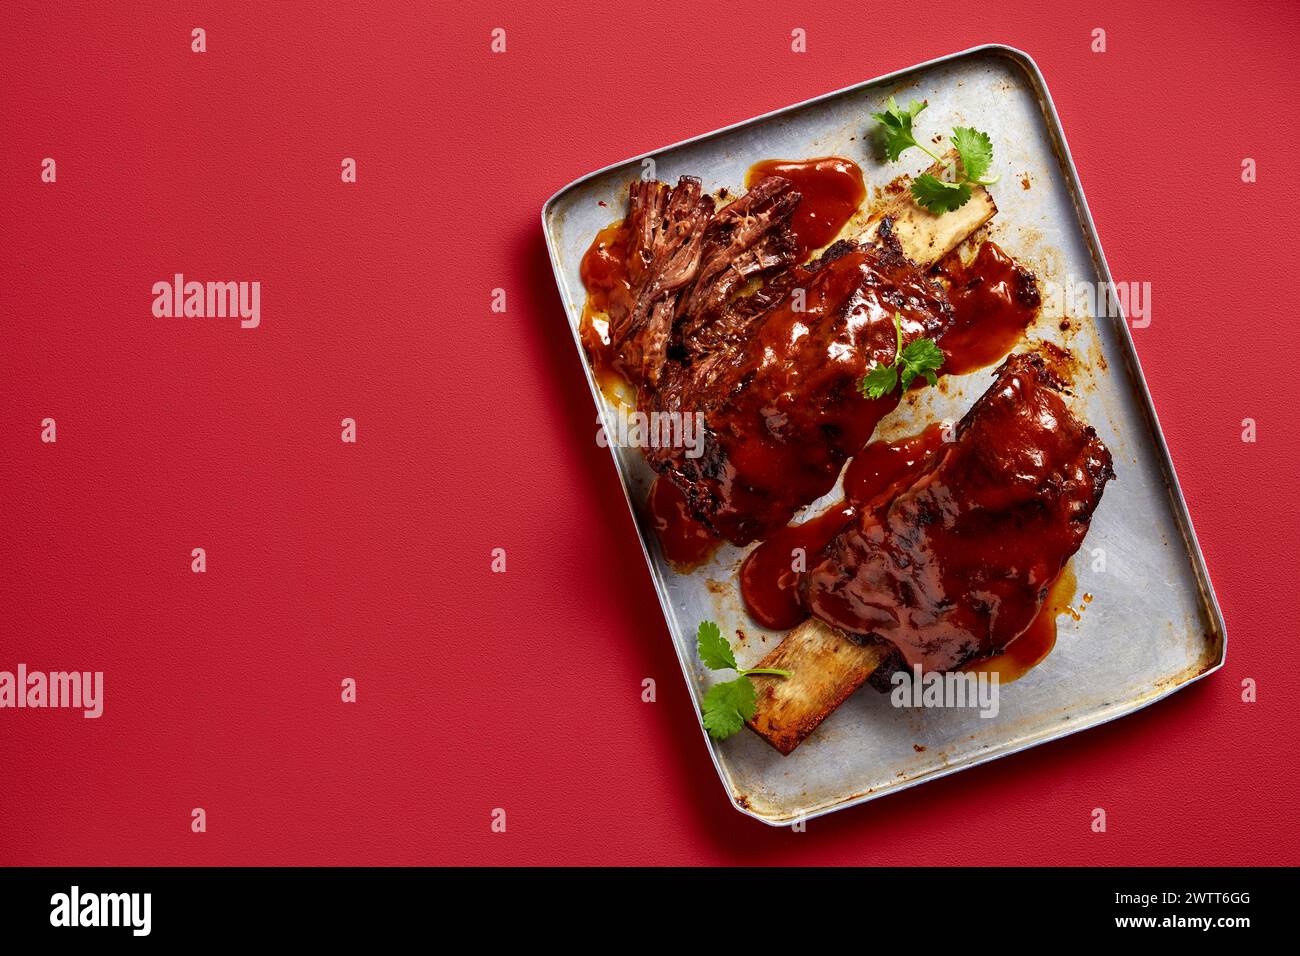 Eine köstliche Portion Barbecue Rippchen auf einem Teller, die Sie genießen können. Stockfoto